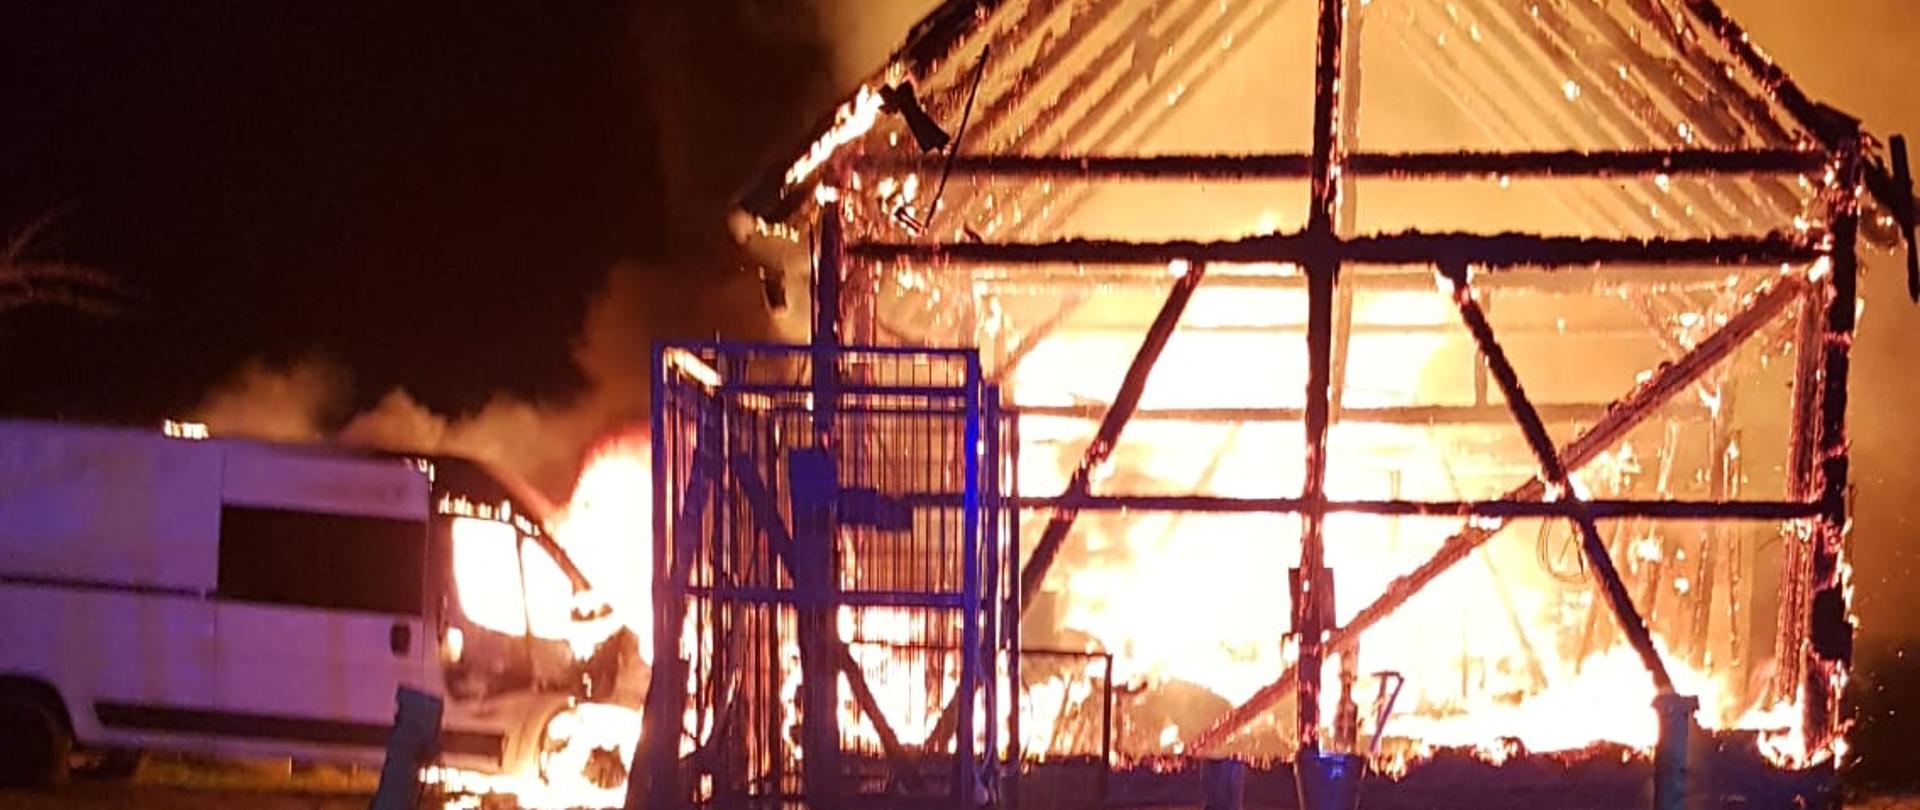 Pożar całej stodoły i samochodu dostawczego znajdującego się przy budynku.